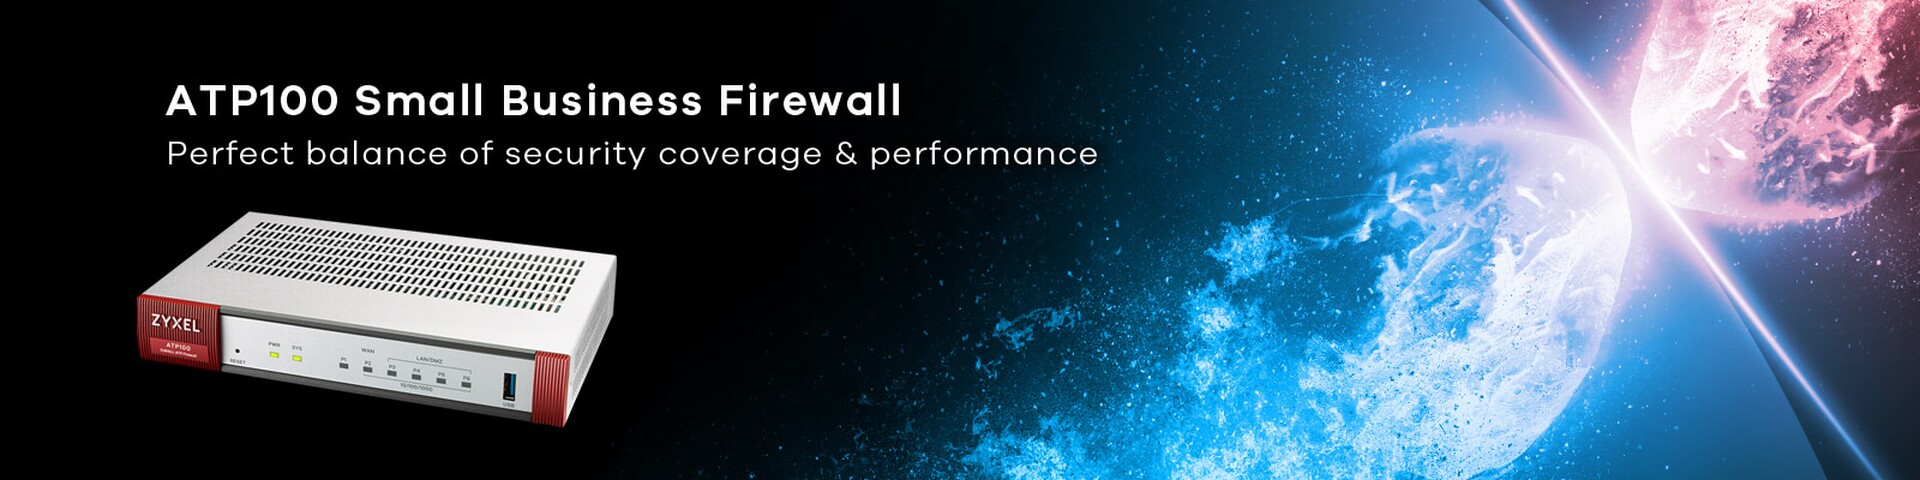 Großer Netzwerkschutz für kleine Unternehmen mit der erschwinglichen Firewall ATP100 von Zyxel